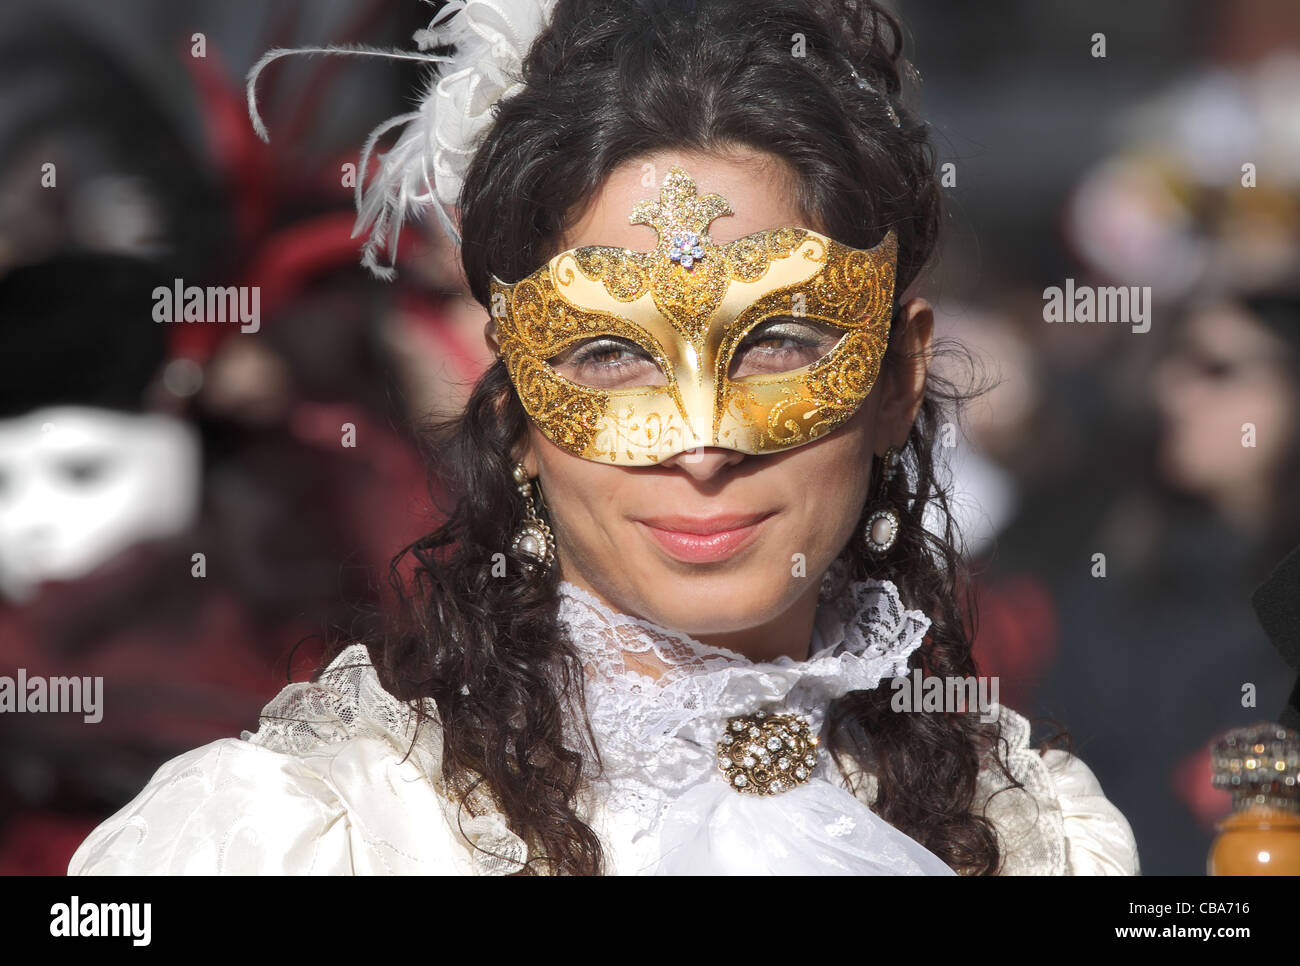 Unbekannte Teilnehmer tragen traditionelle Maske und Kostüm während des berühmten venezianischen Karnevals. Stockfoto